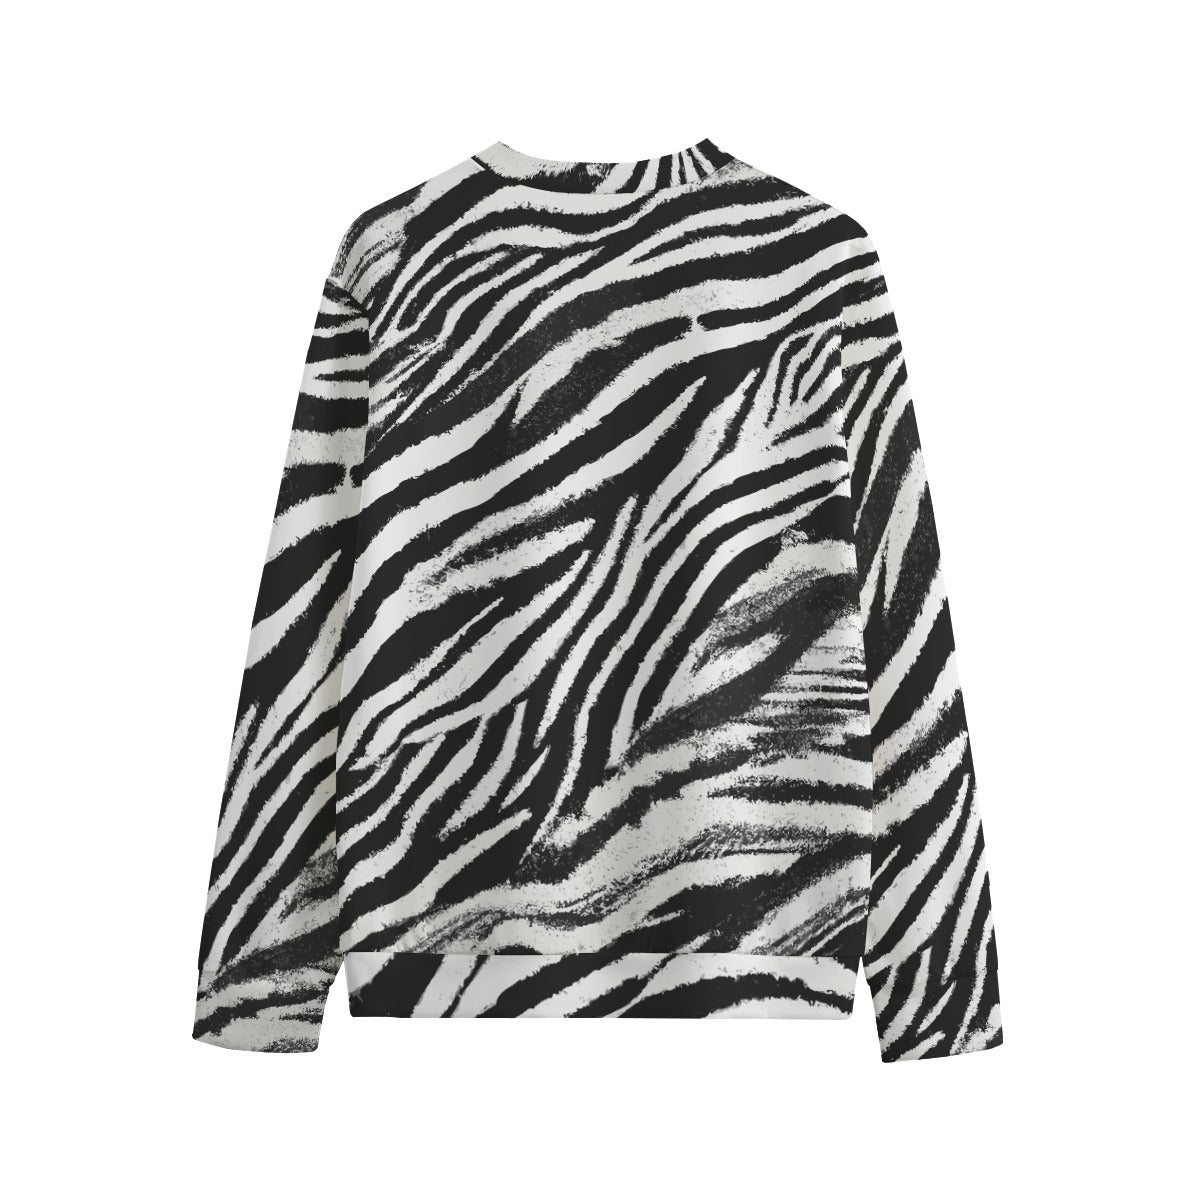 Vampire Art 100% Cotton Grunge Zebra Unisex Sweatshirt Jumper | 310GSM Cotton